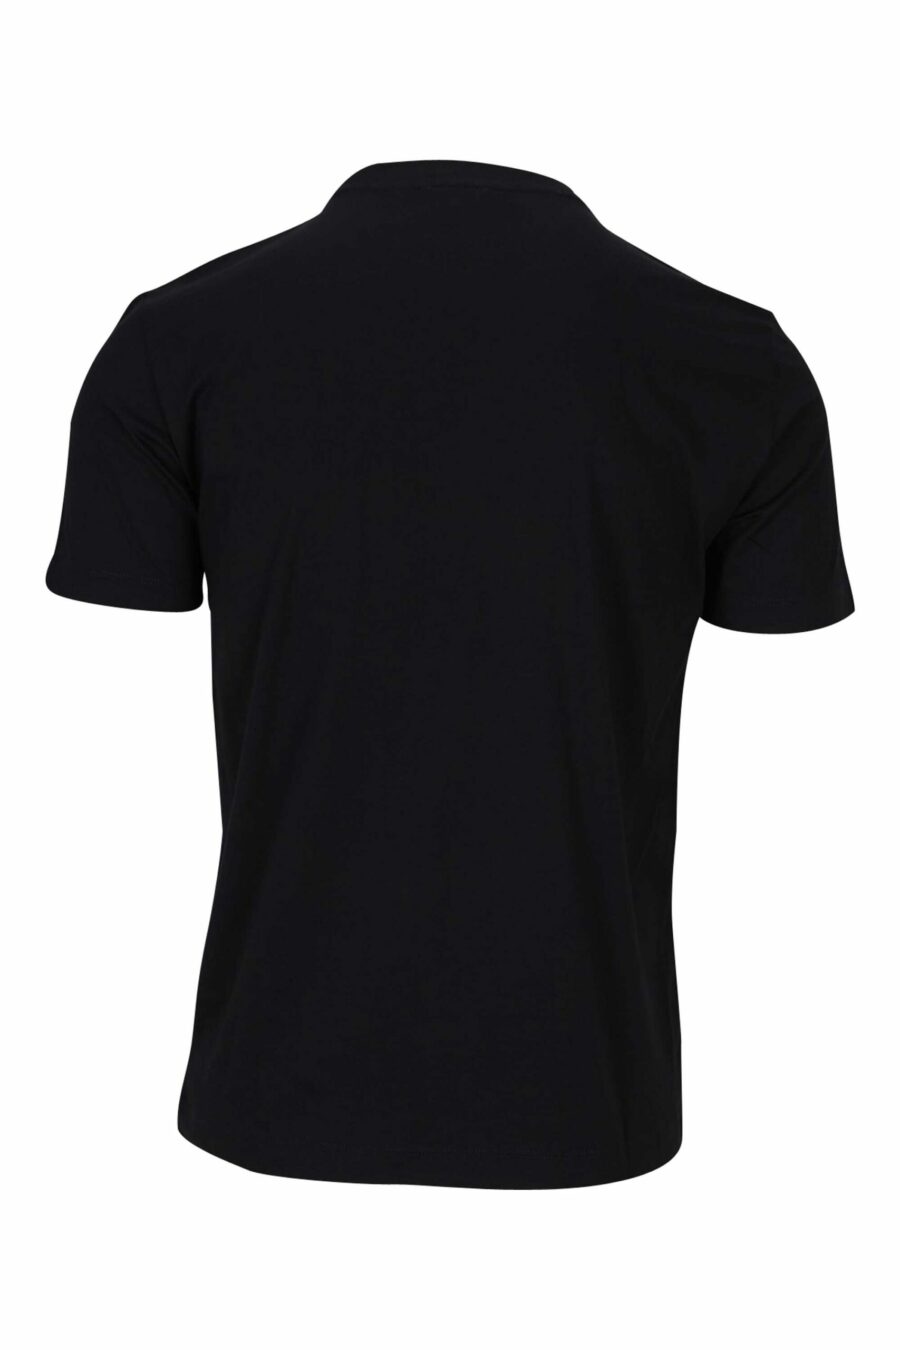 T-shirt preta com maxilogo "lux identity" em cinzento - 8056787953321 1 à escala